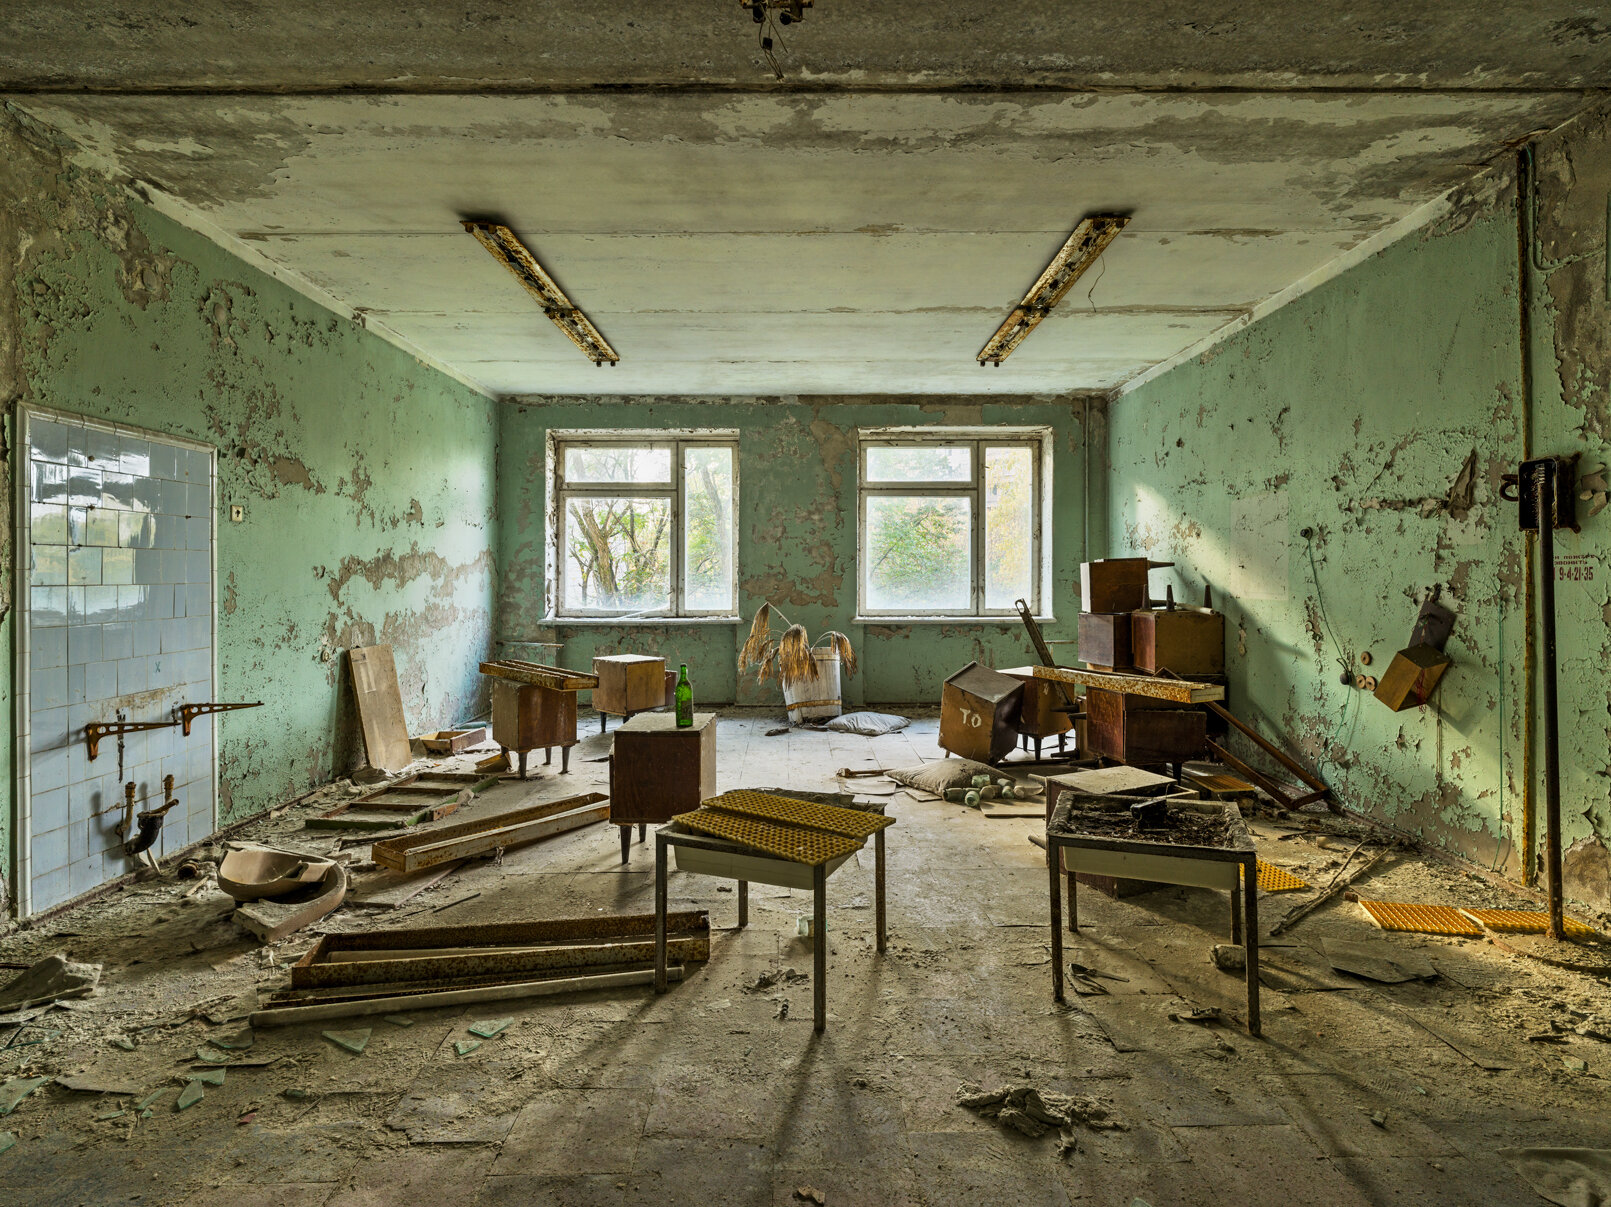 Chernobyl_32.jpg